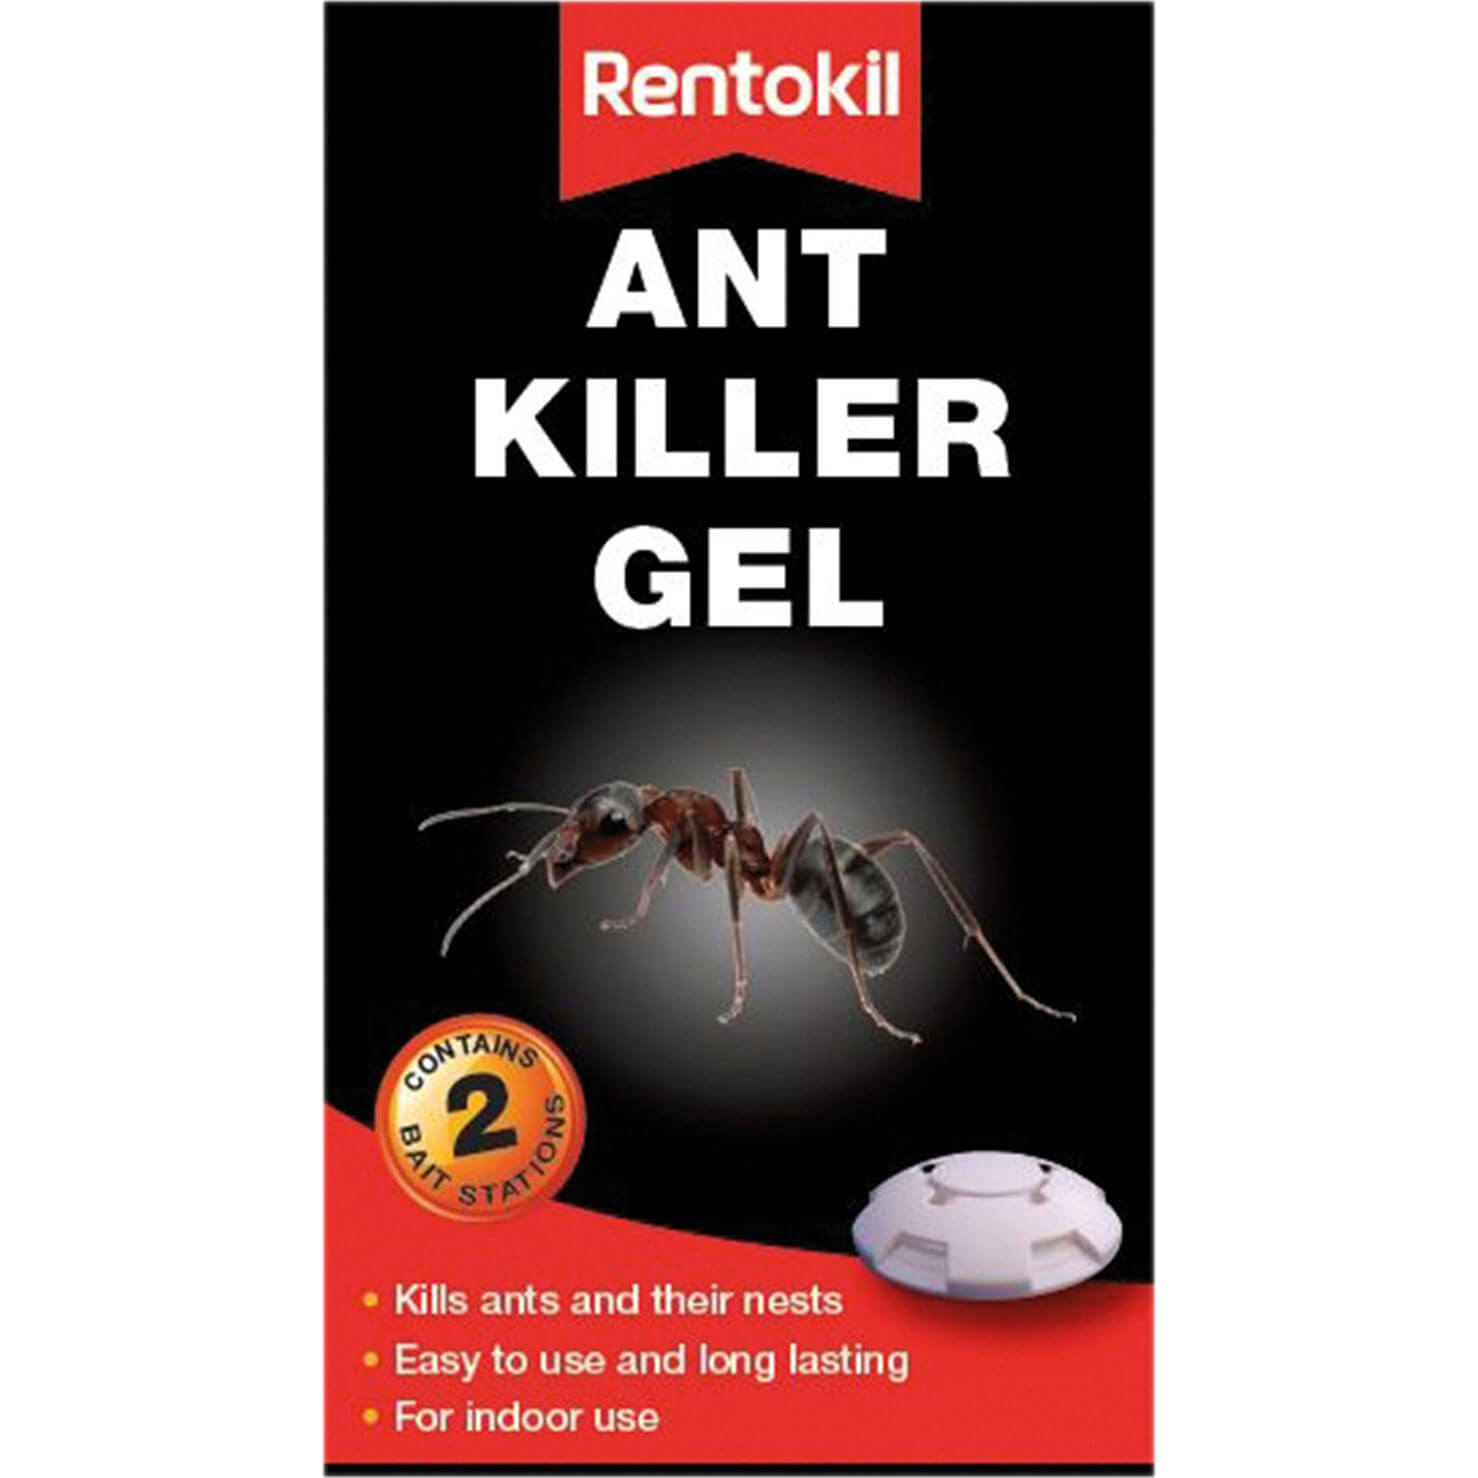 Image of Rentokil Ant Killer Gel Pack of 2